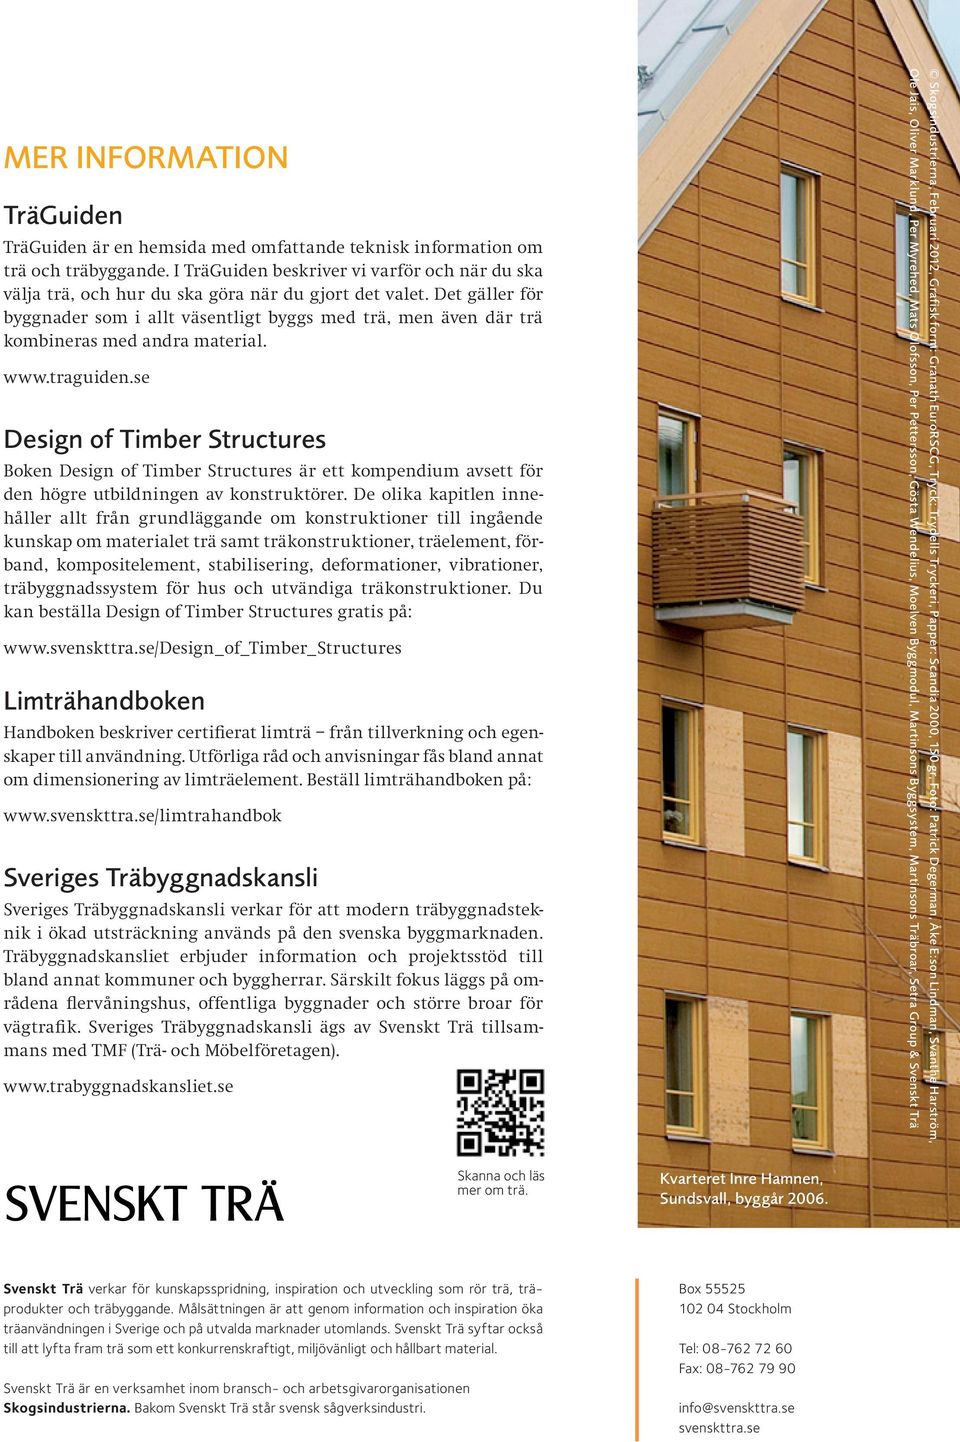 Det gäller för byggnader som i allt väsentligt byggs med trä, men även där trä kombineras med andra material. www.traguiden.